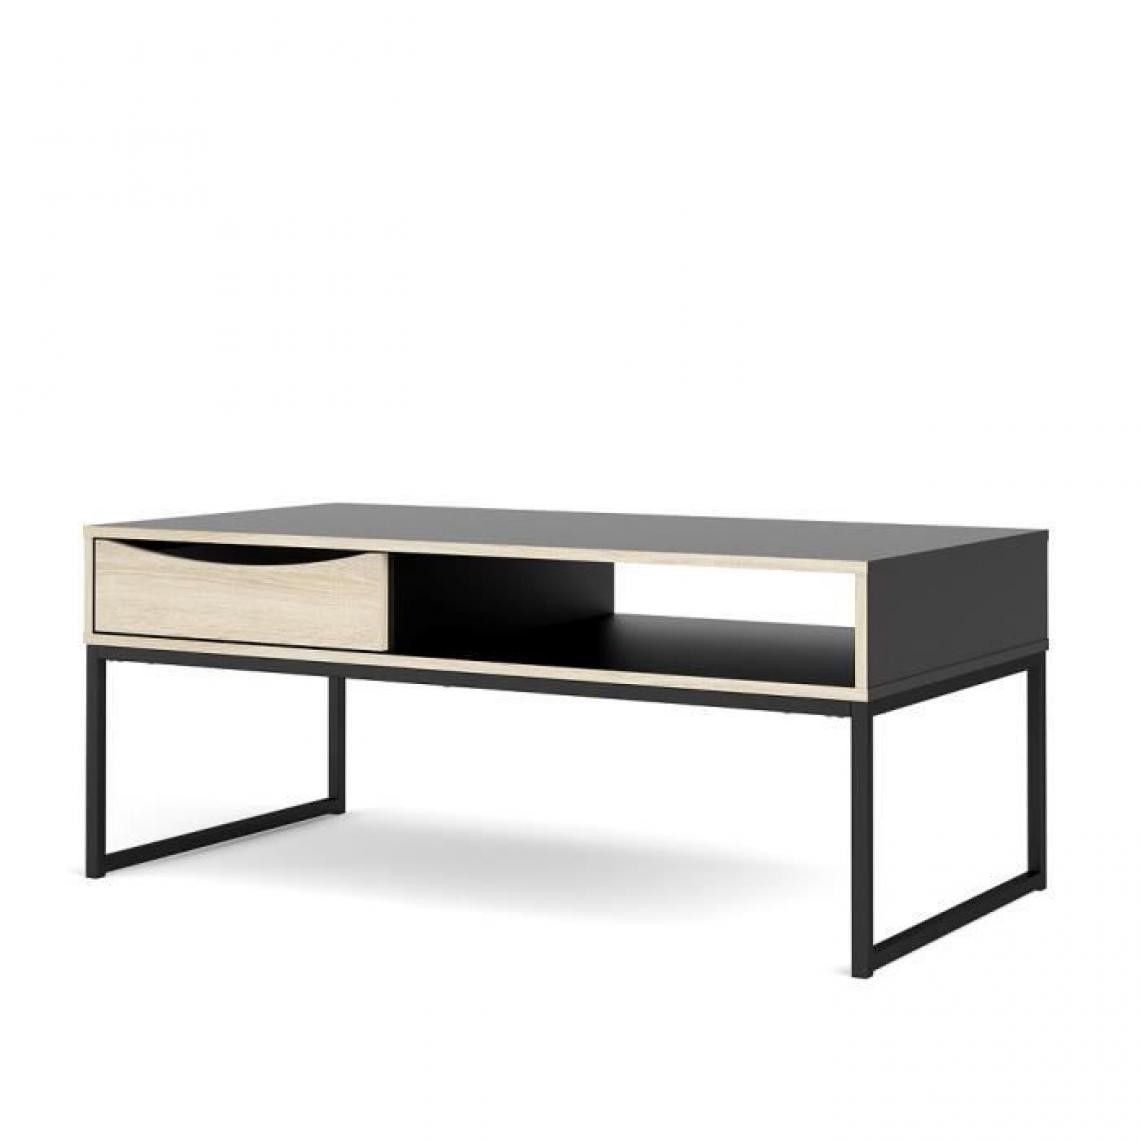 TVILUM - TVILUM Table basse 1 tiroir - Décor chene et noir - L 117,2 x P 60 x H 48,2 cm - STUBBE - Tables basses